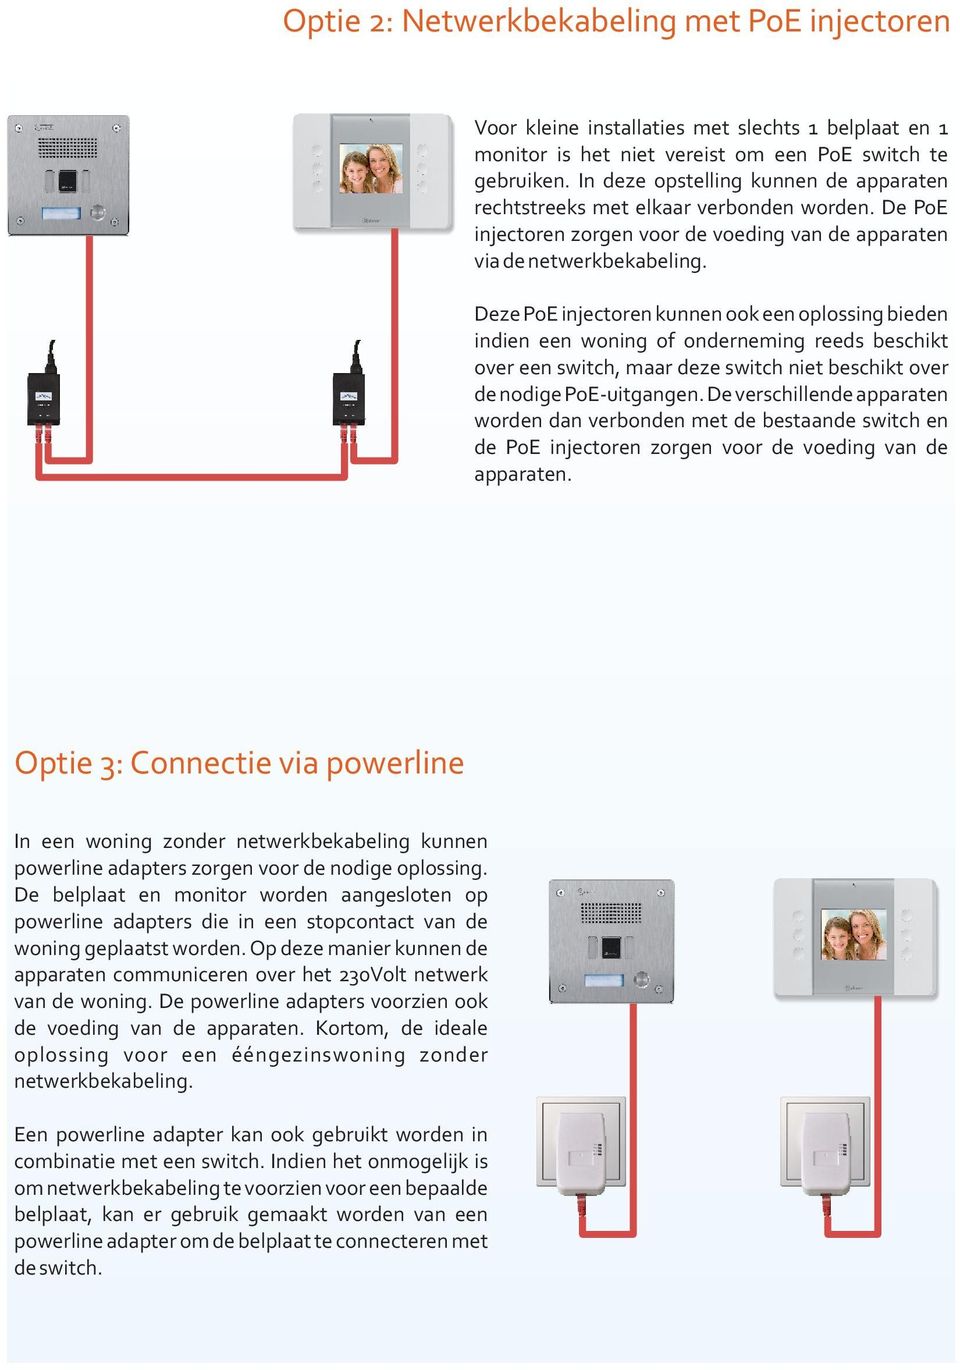 Deze PoE injectoren kunnen ook een oplossing bieden indien een woning of onderneming reeds beschikt over een switch, maar deze switch niet beschikt over de nodige PoE-uitgangen.